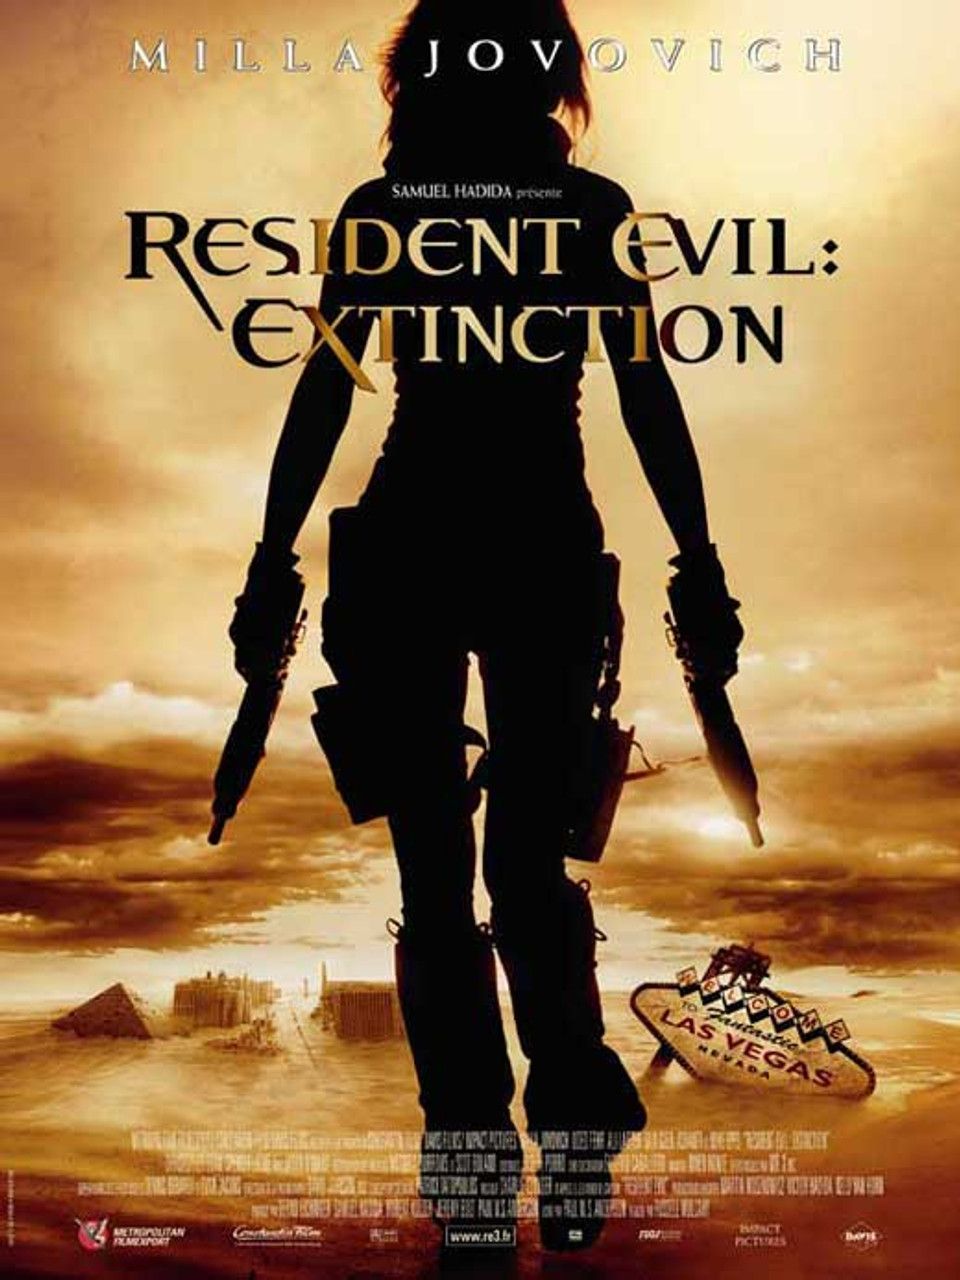 The Resident Evil franchise (2002-2012)